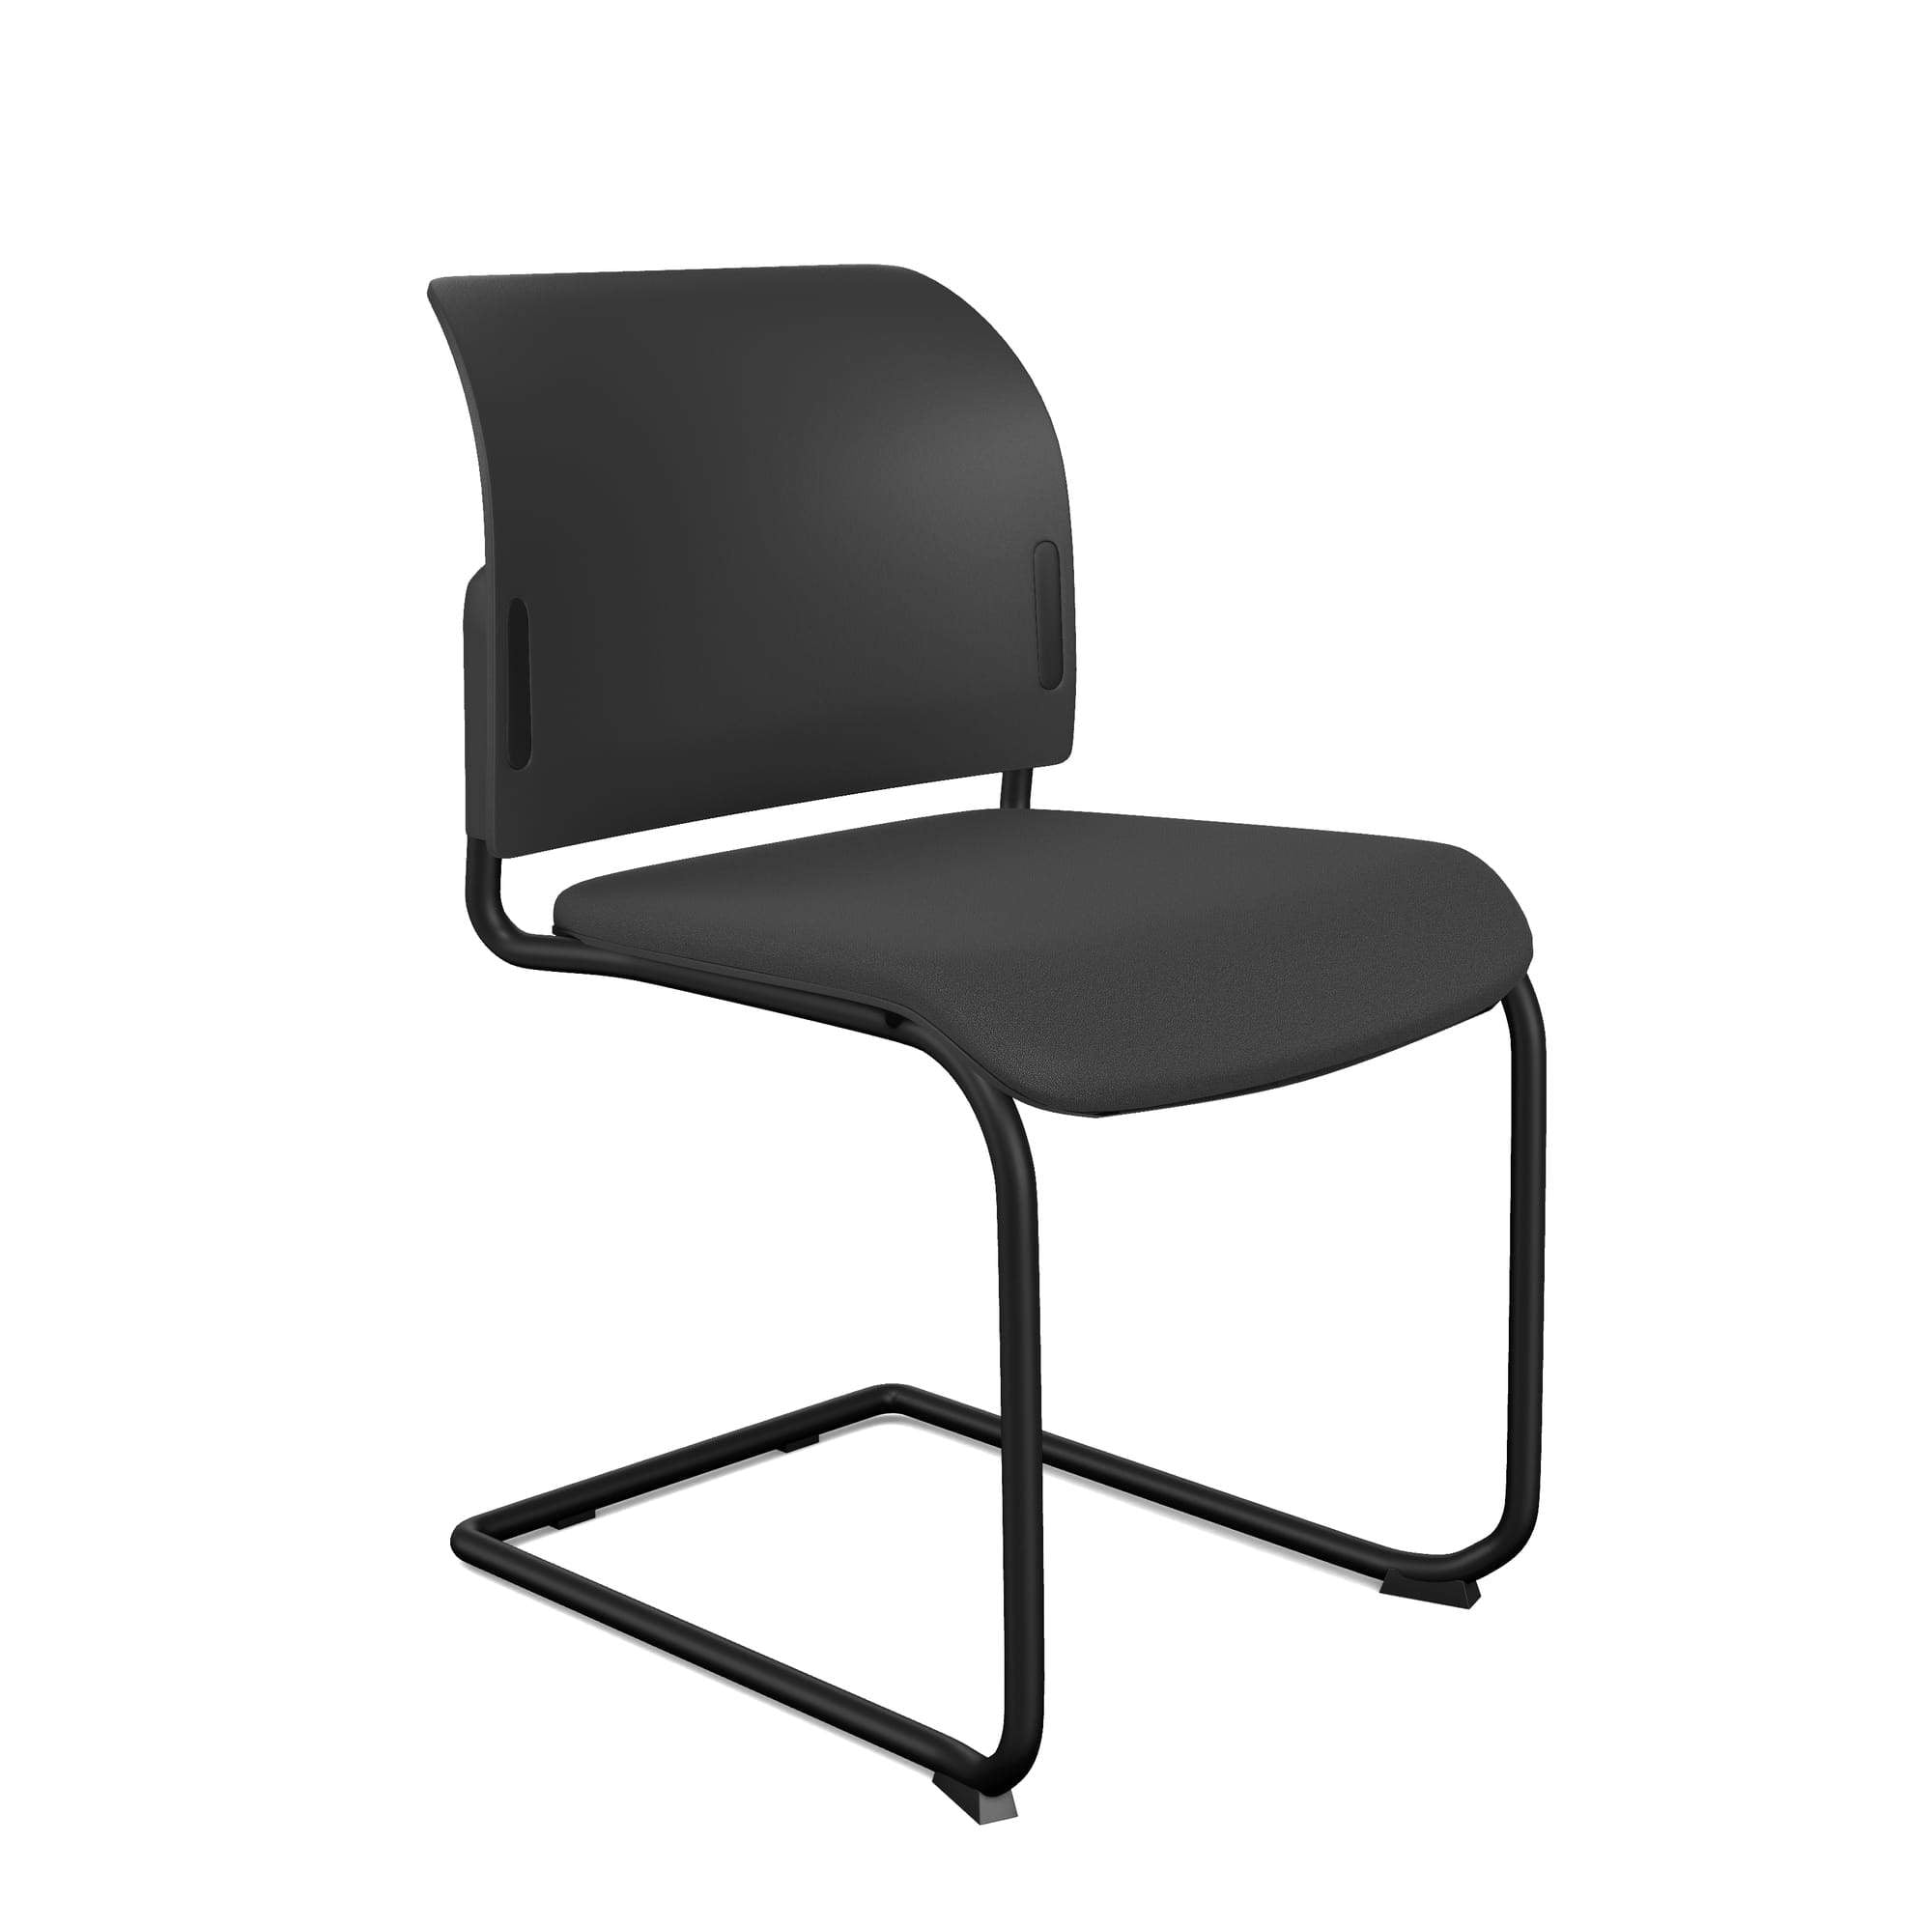 Bit Upholstered Seat and Plastic Backrest Chair, Cantilever Frame - Model 560V